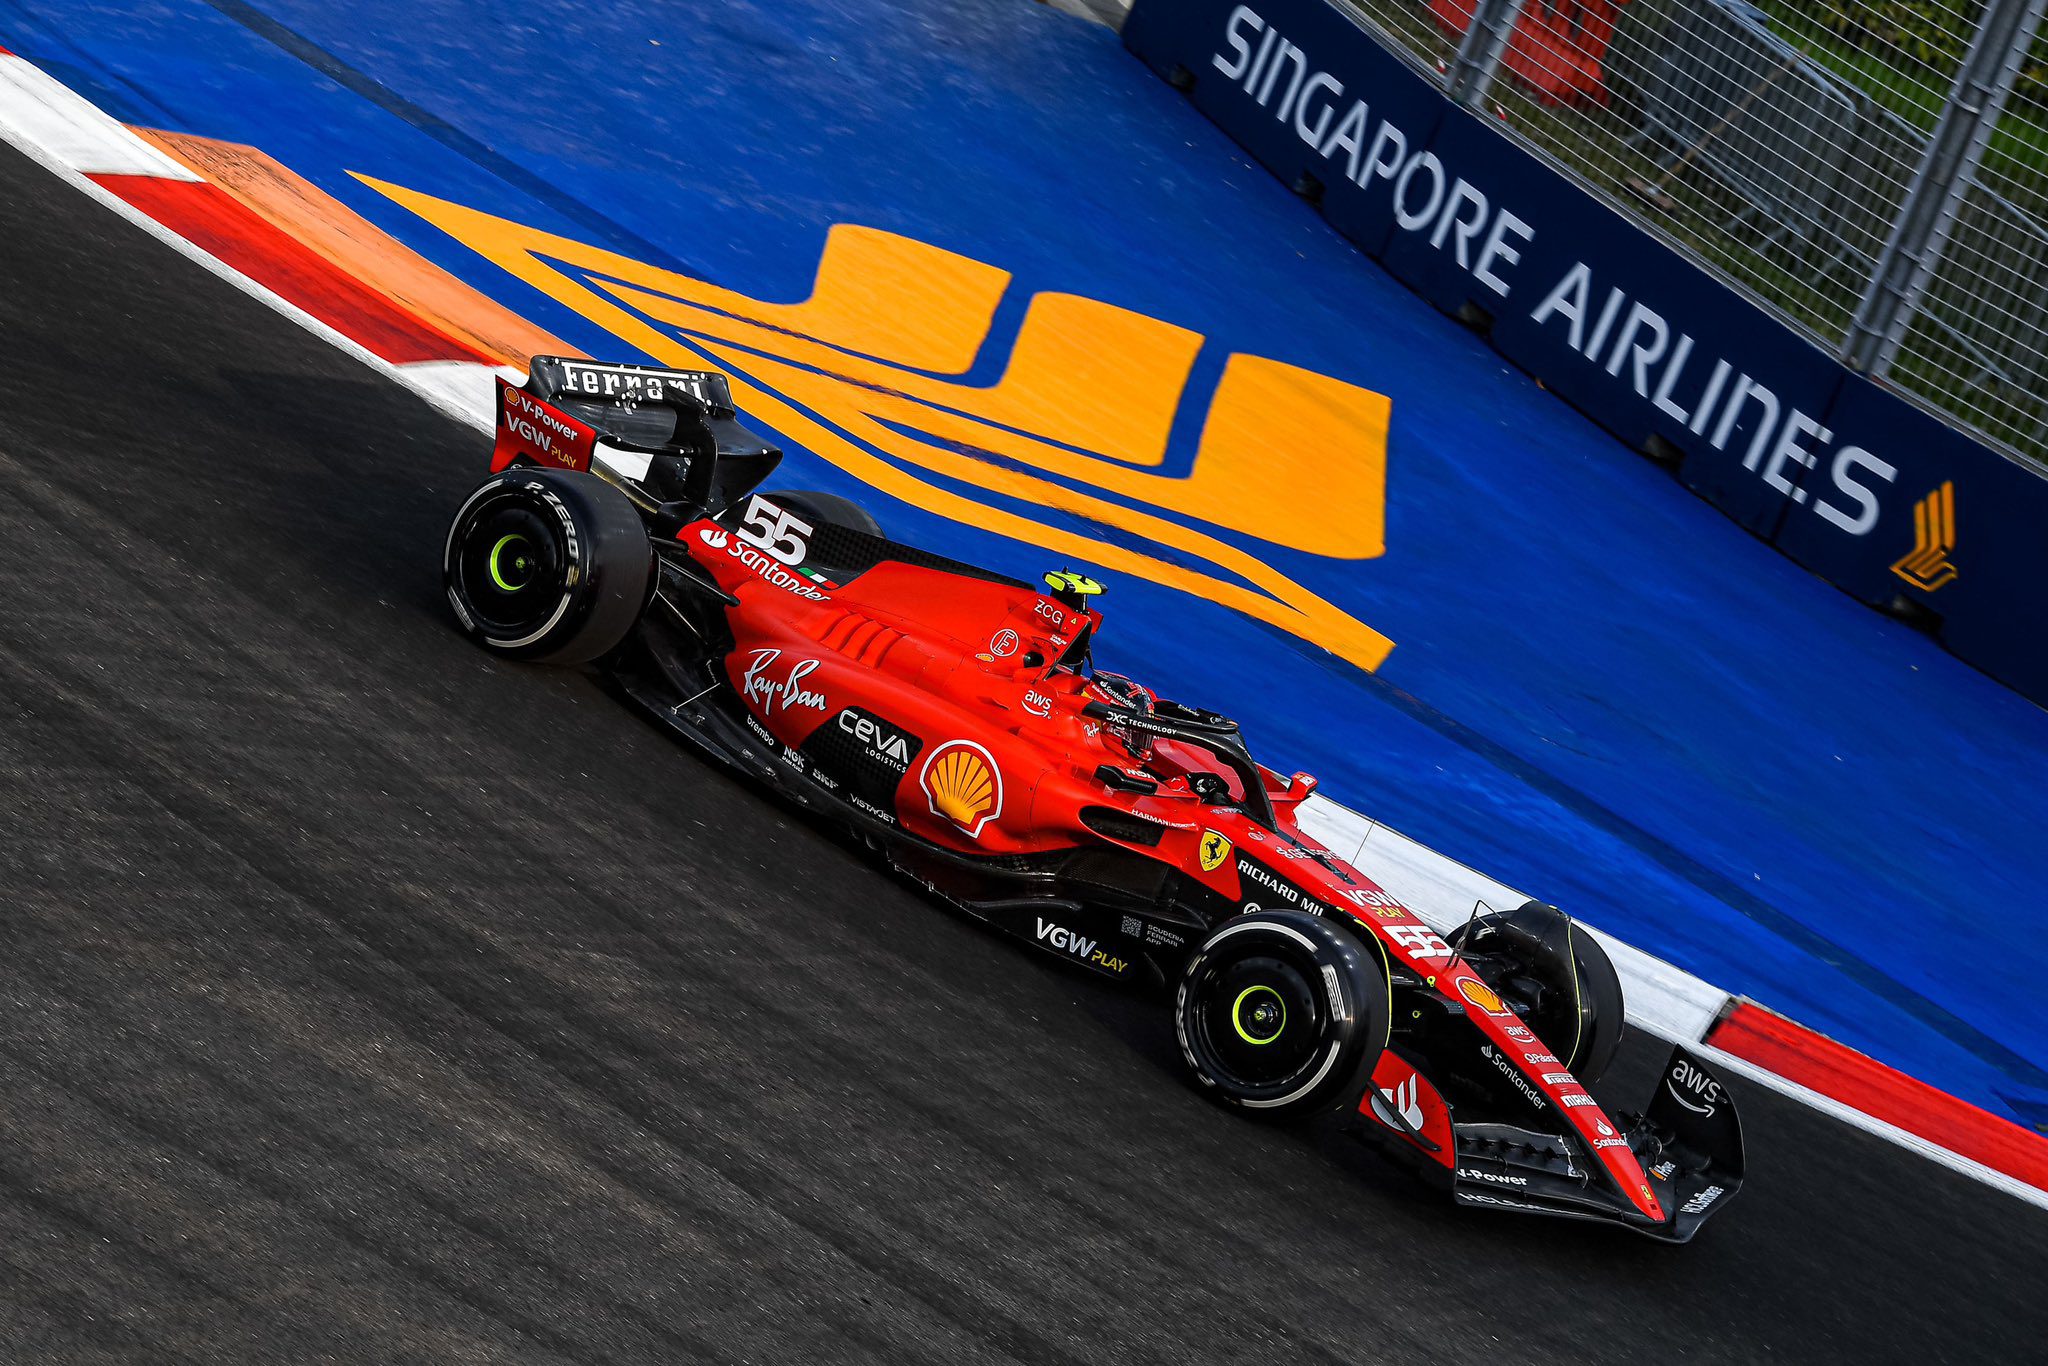 GP de Singapura: Sainz puxa dobradinha da Ferrari em 2º treino